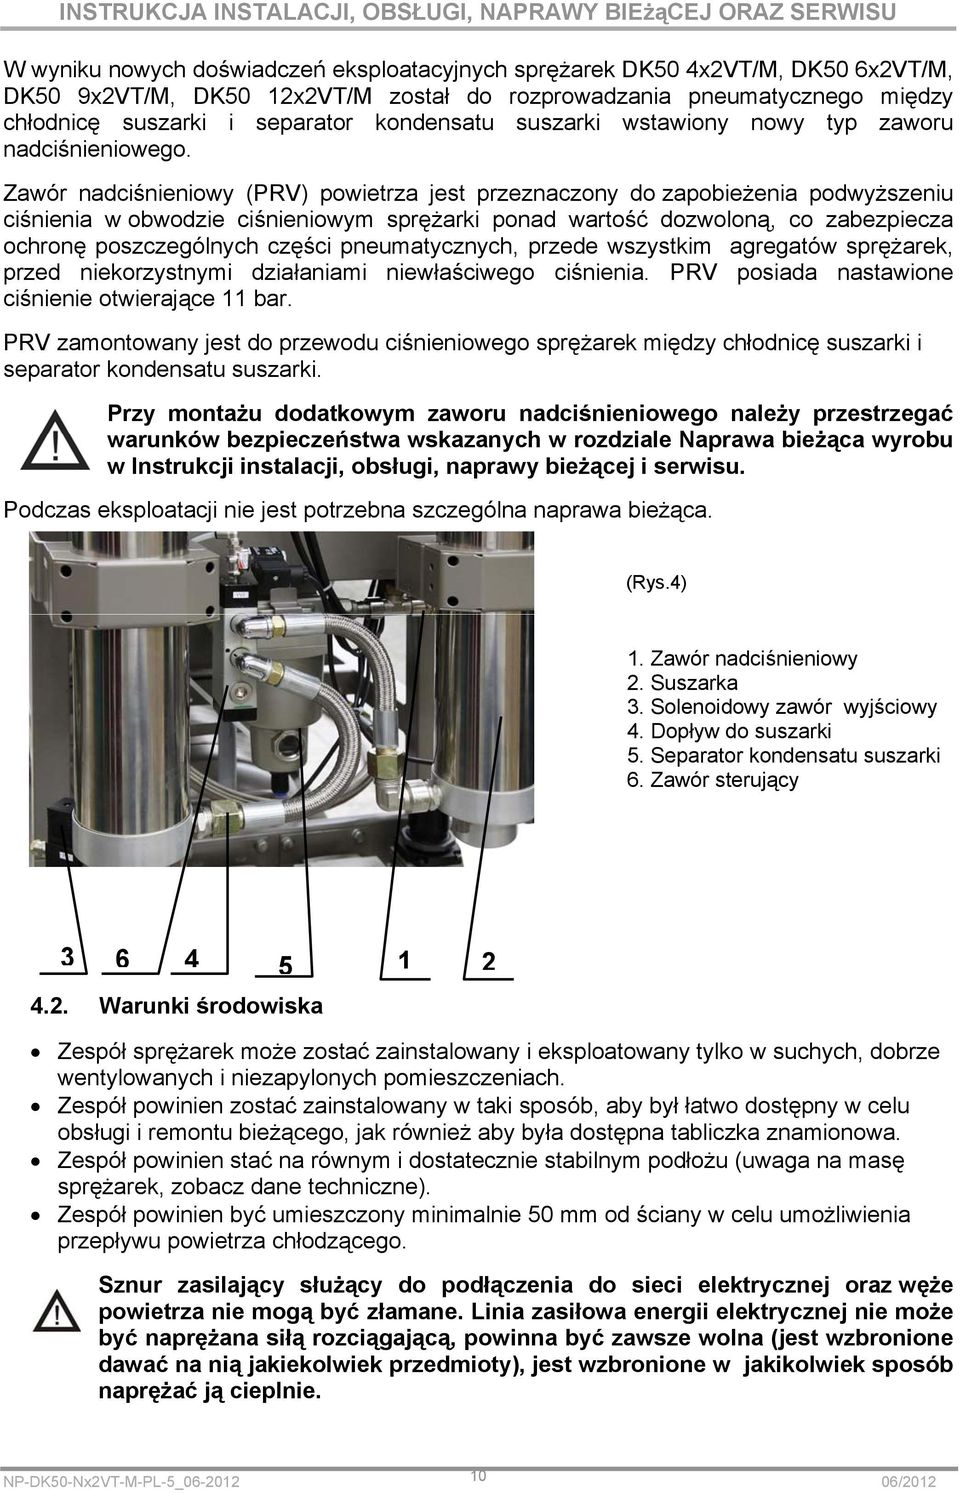 Zawór nadciśnieniowy (PRV) powietrza jest przeznaczony do zapobieżenia podwyższeniu ciśnienia w obwodzie ciśnieniowym sprężarki ponad wartość dozwoloną, co zabezpiecza ochronę poszczególnych części